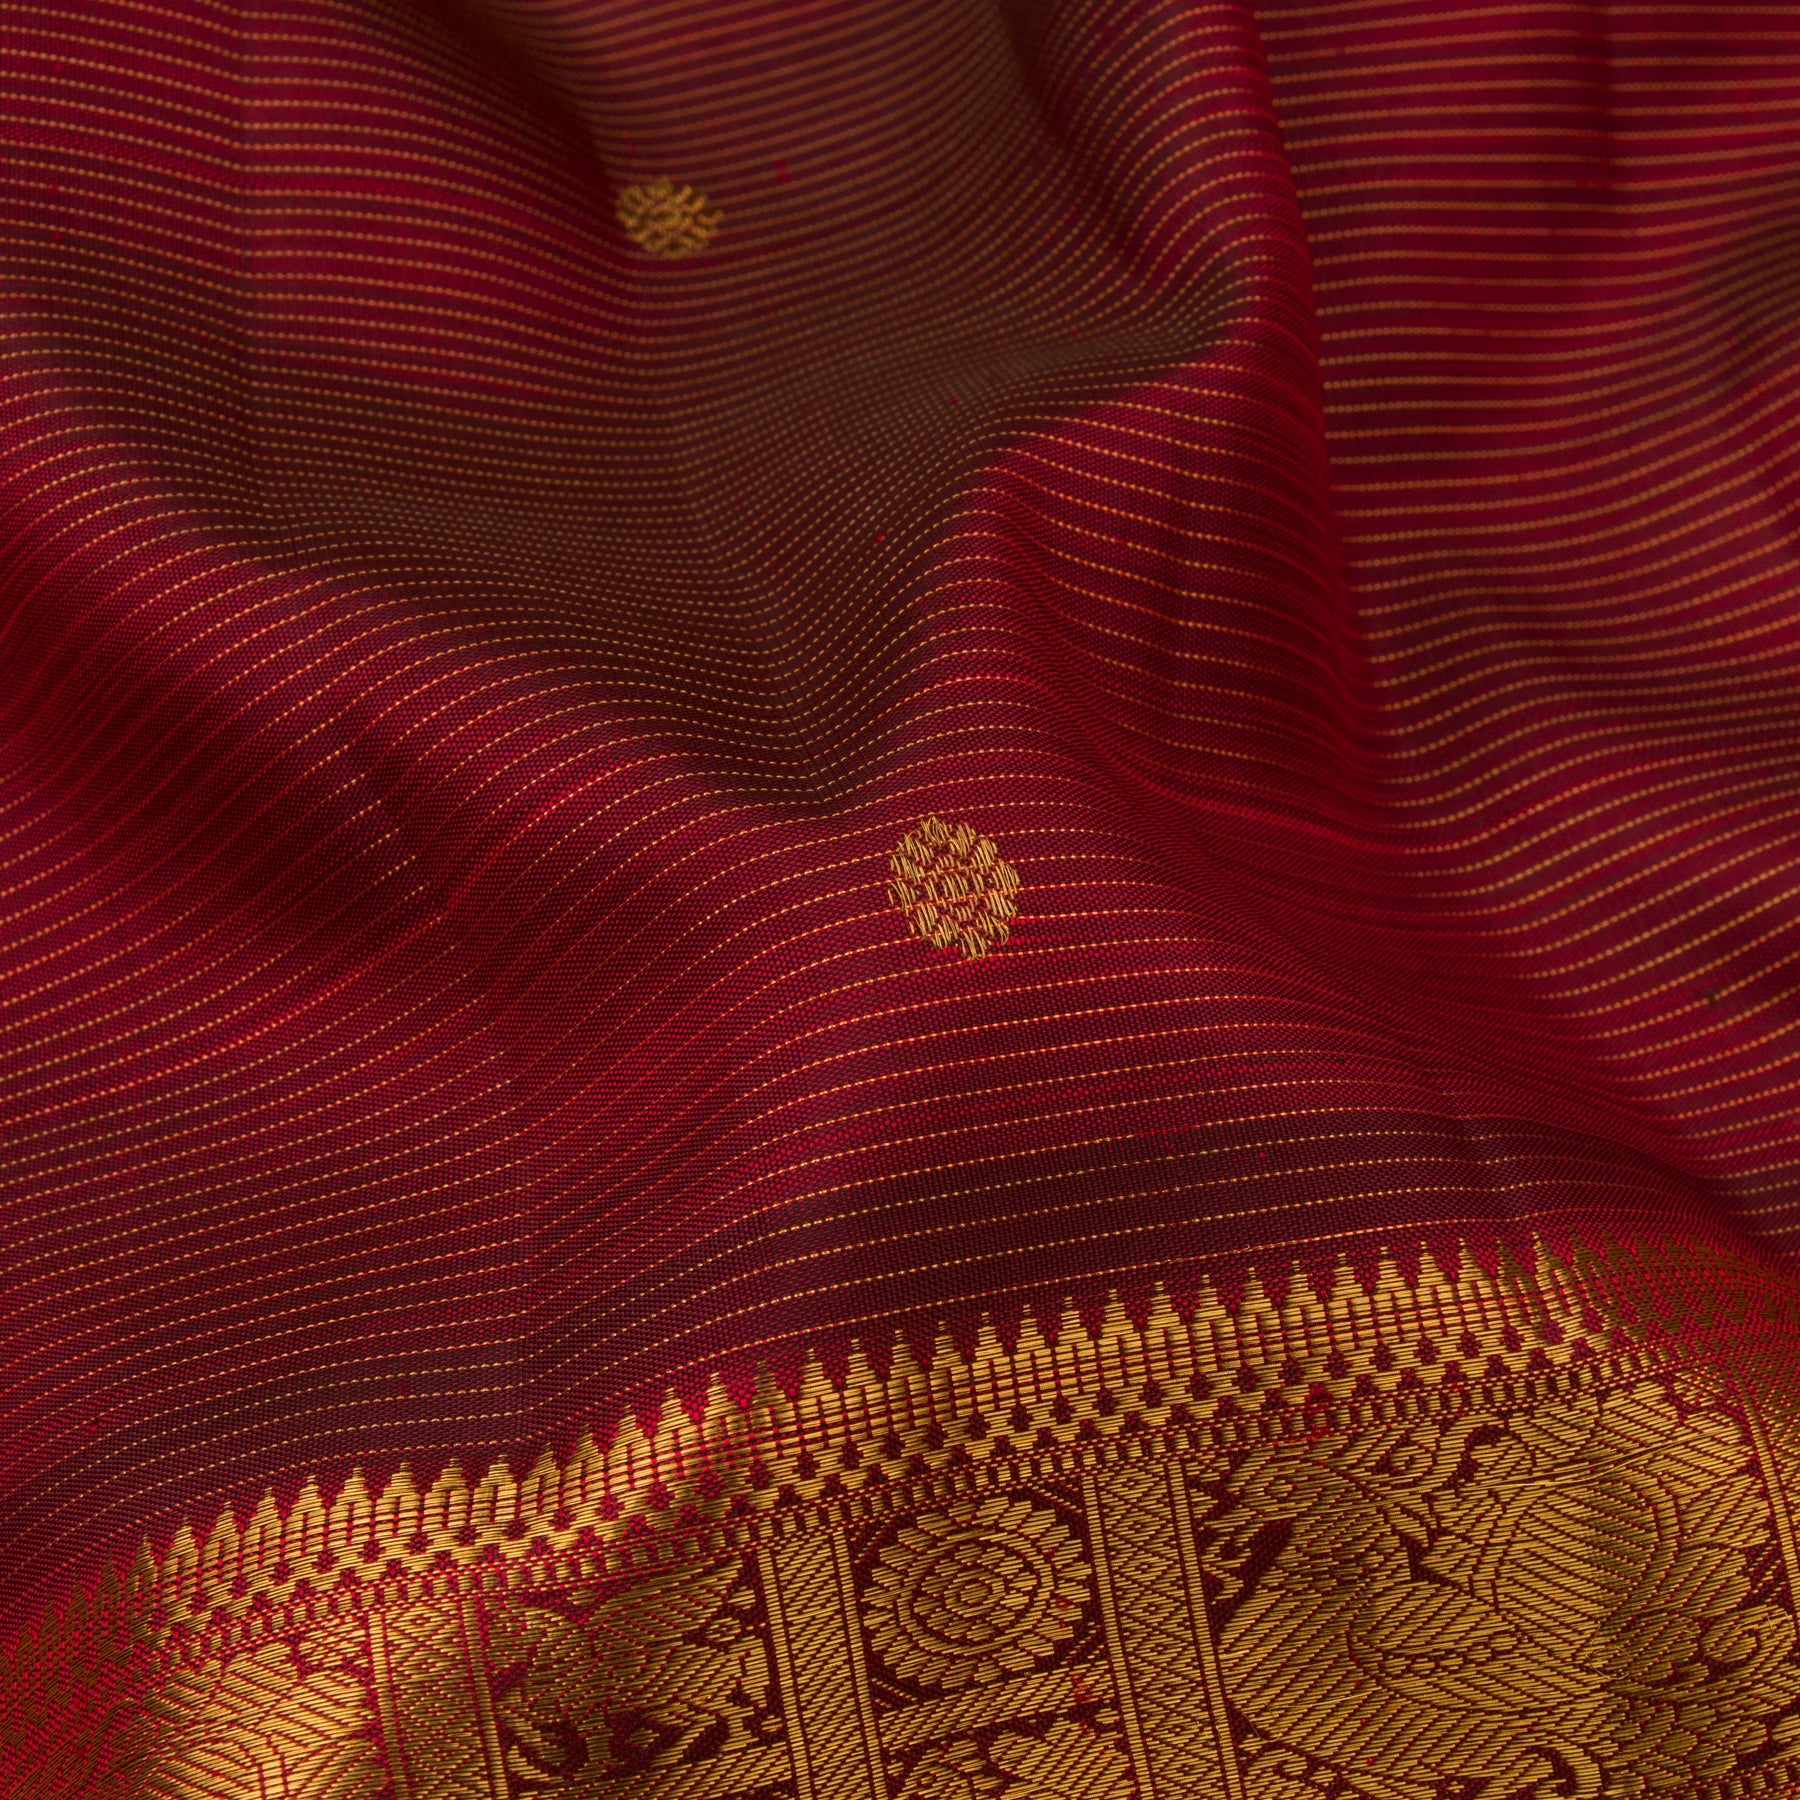 Kanakavalli Kanjivaram Silk Sari 22-599-HS001-09320 - Fabric View